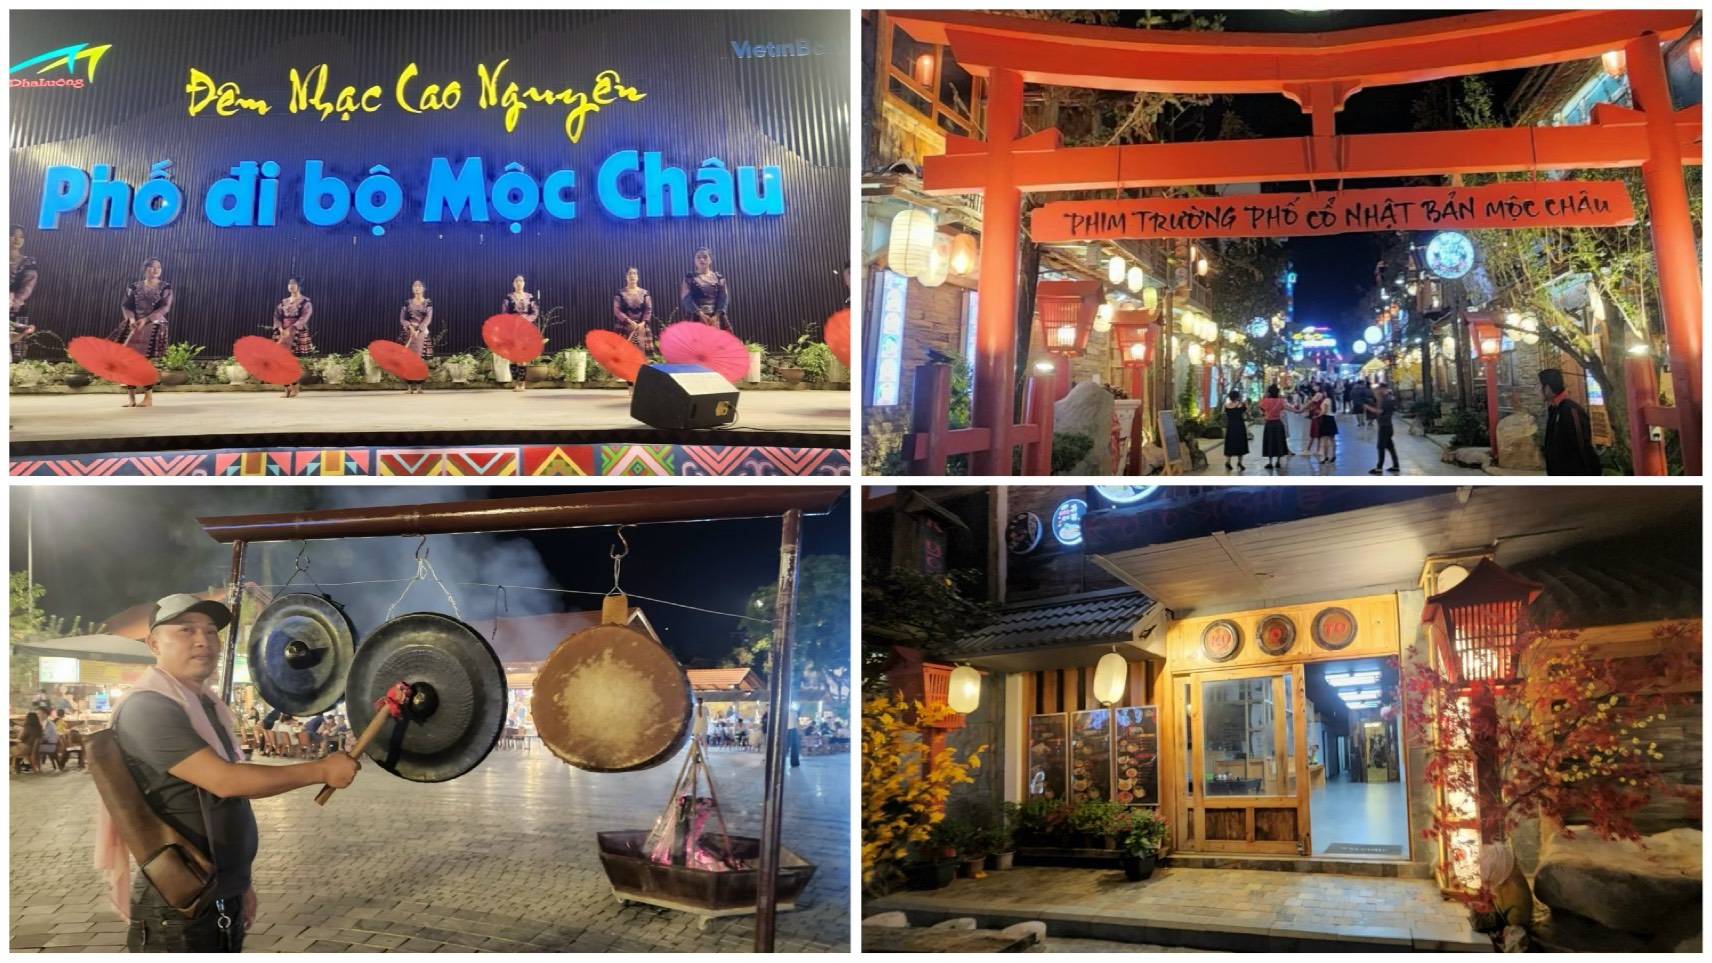 Với những du khách yêu thích sự náo nhiệt khi đến Mộc Châu, phố đi bộ, chợ đêm là một điểm trải nghiệm hấp dẫn cho du khách khi đến với cao nguyên Mộc Châu